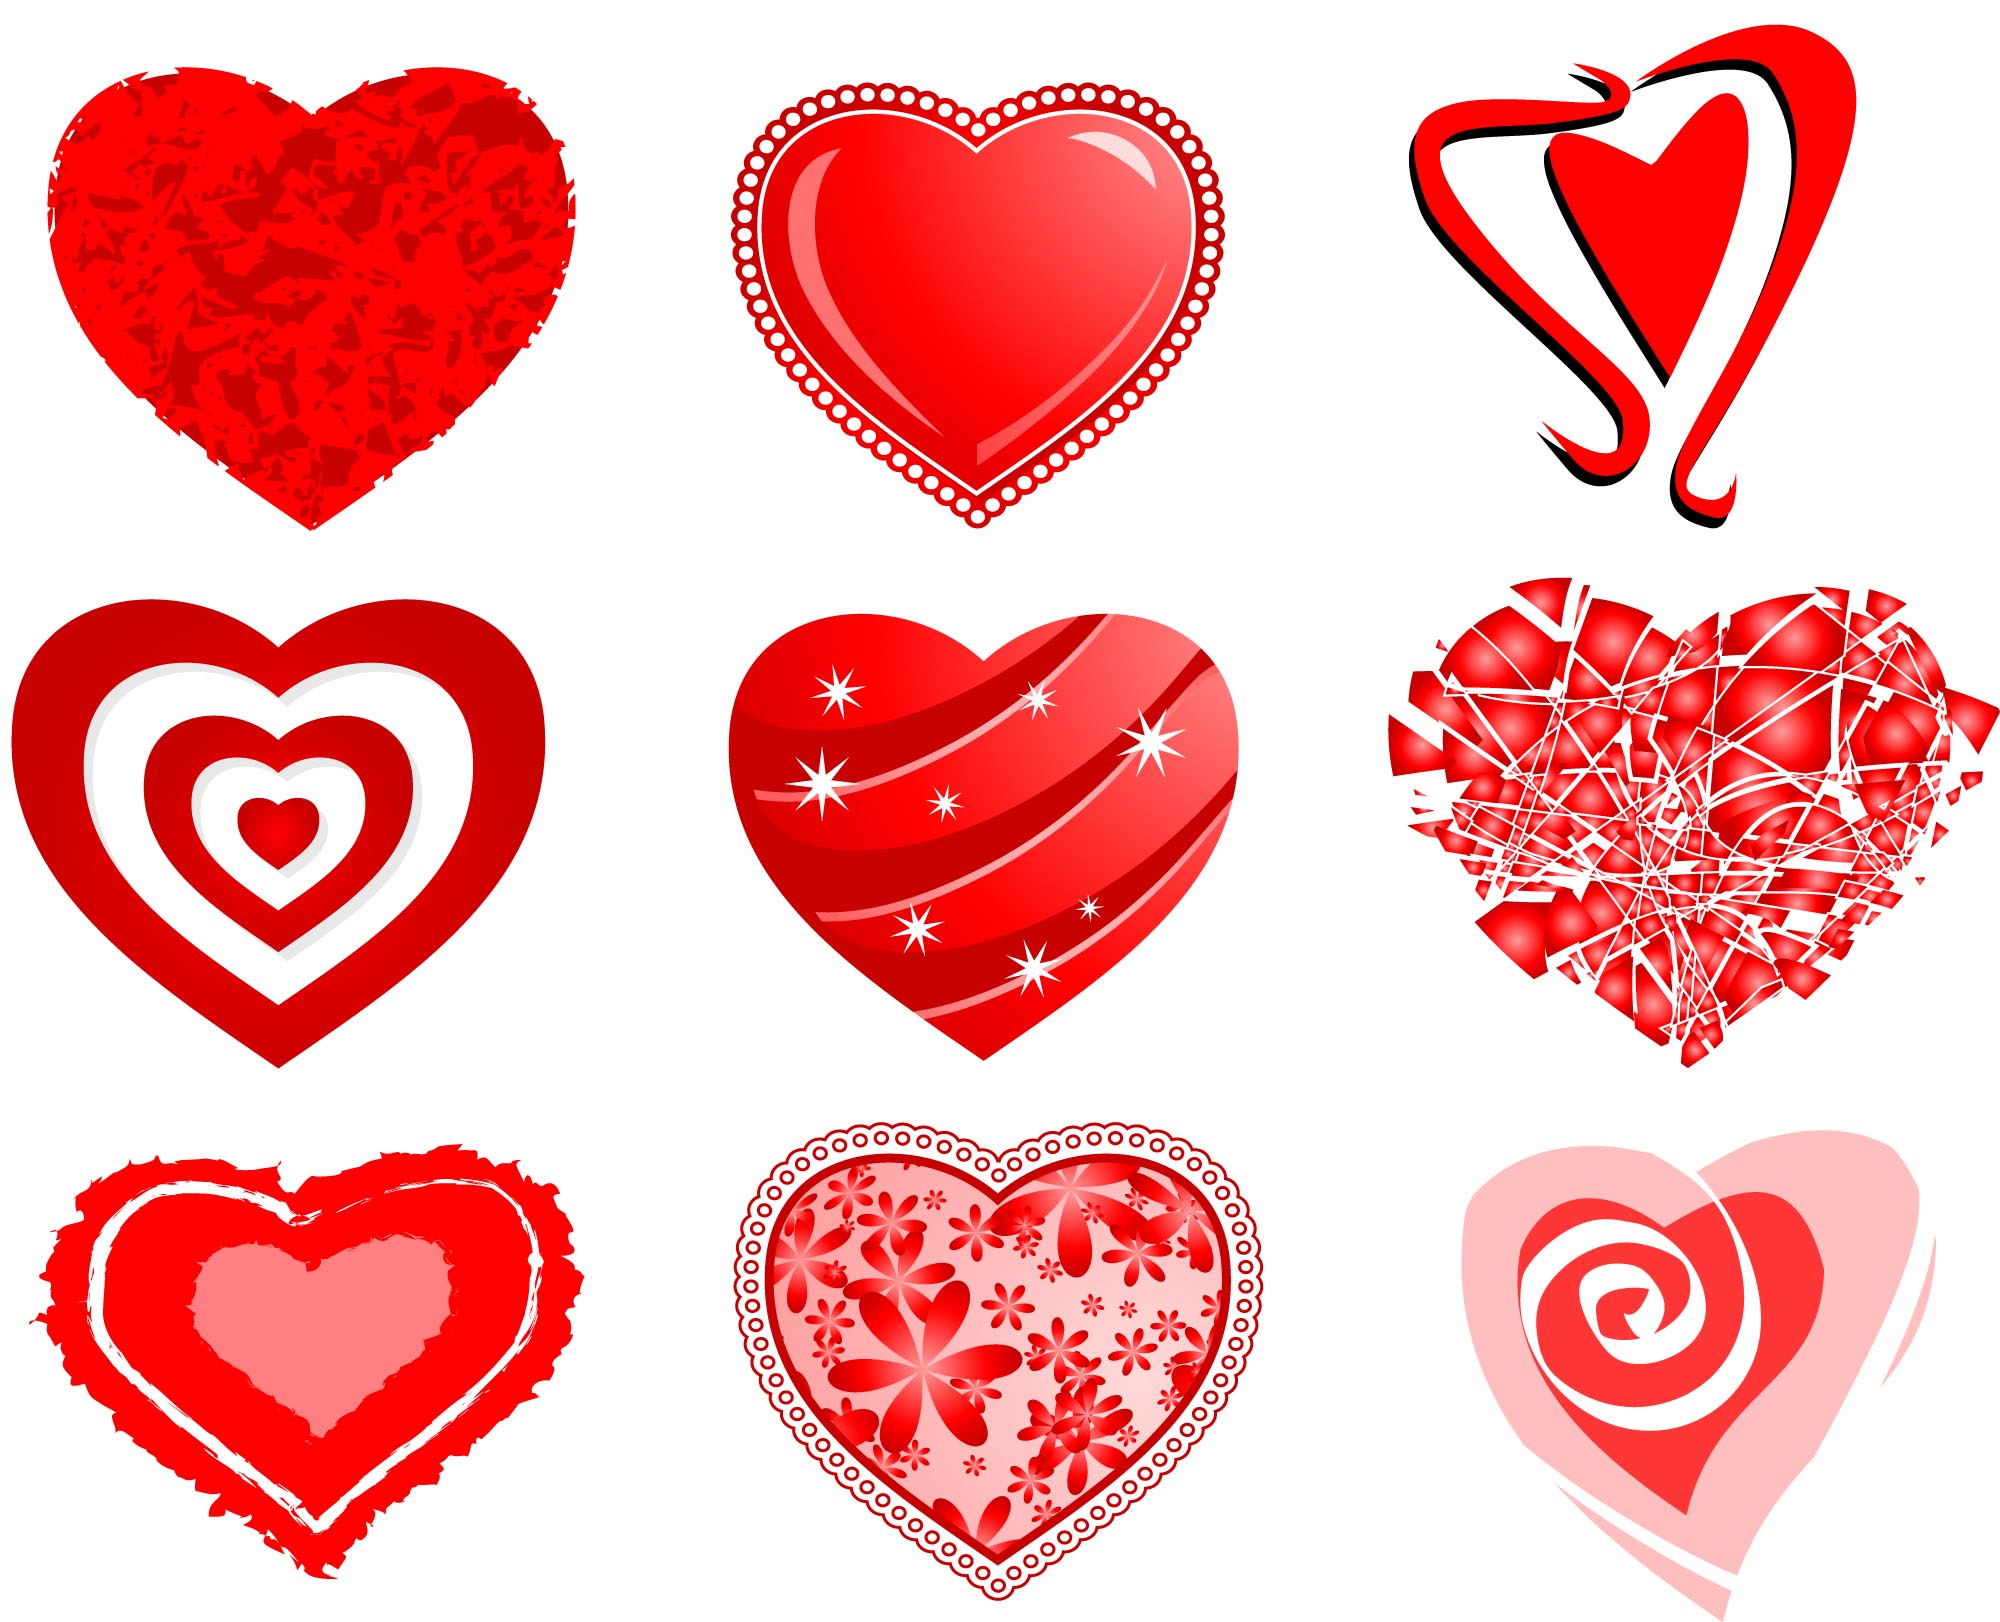 Vector Heart / Heart Free Vectors Download 